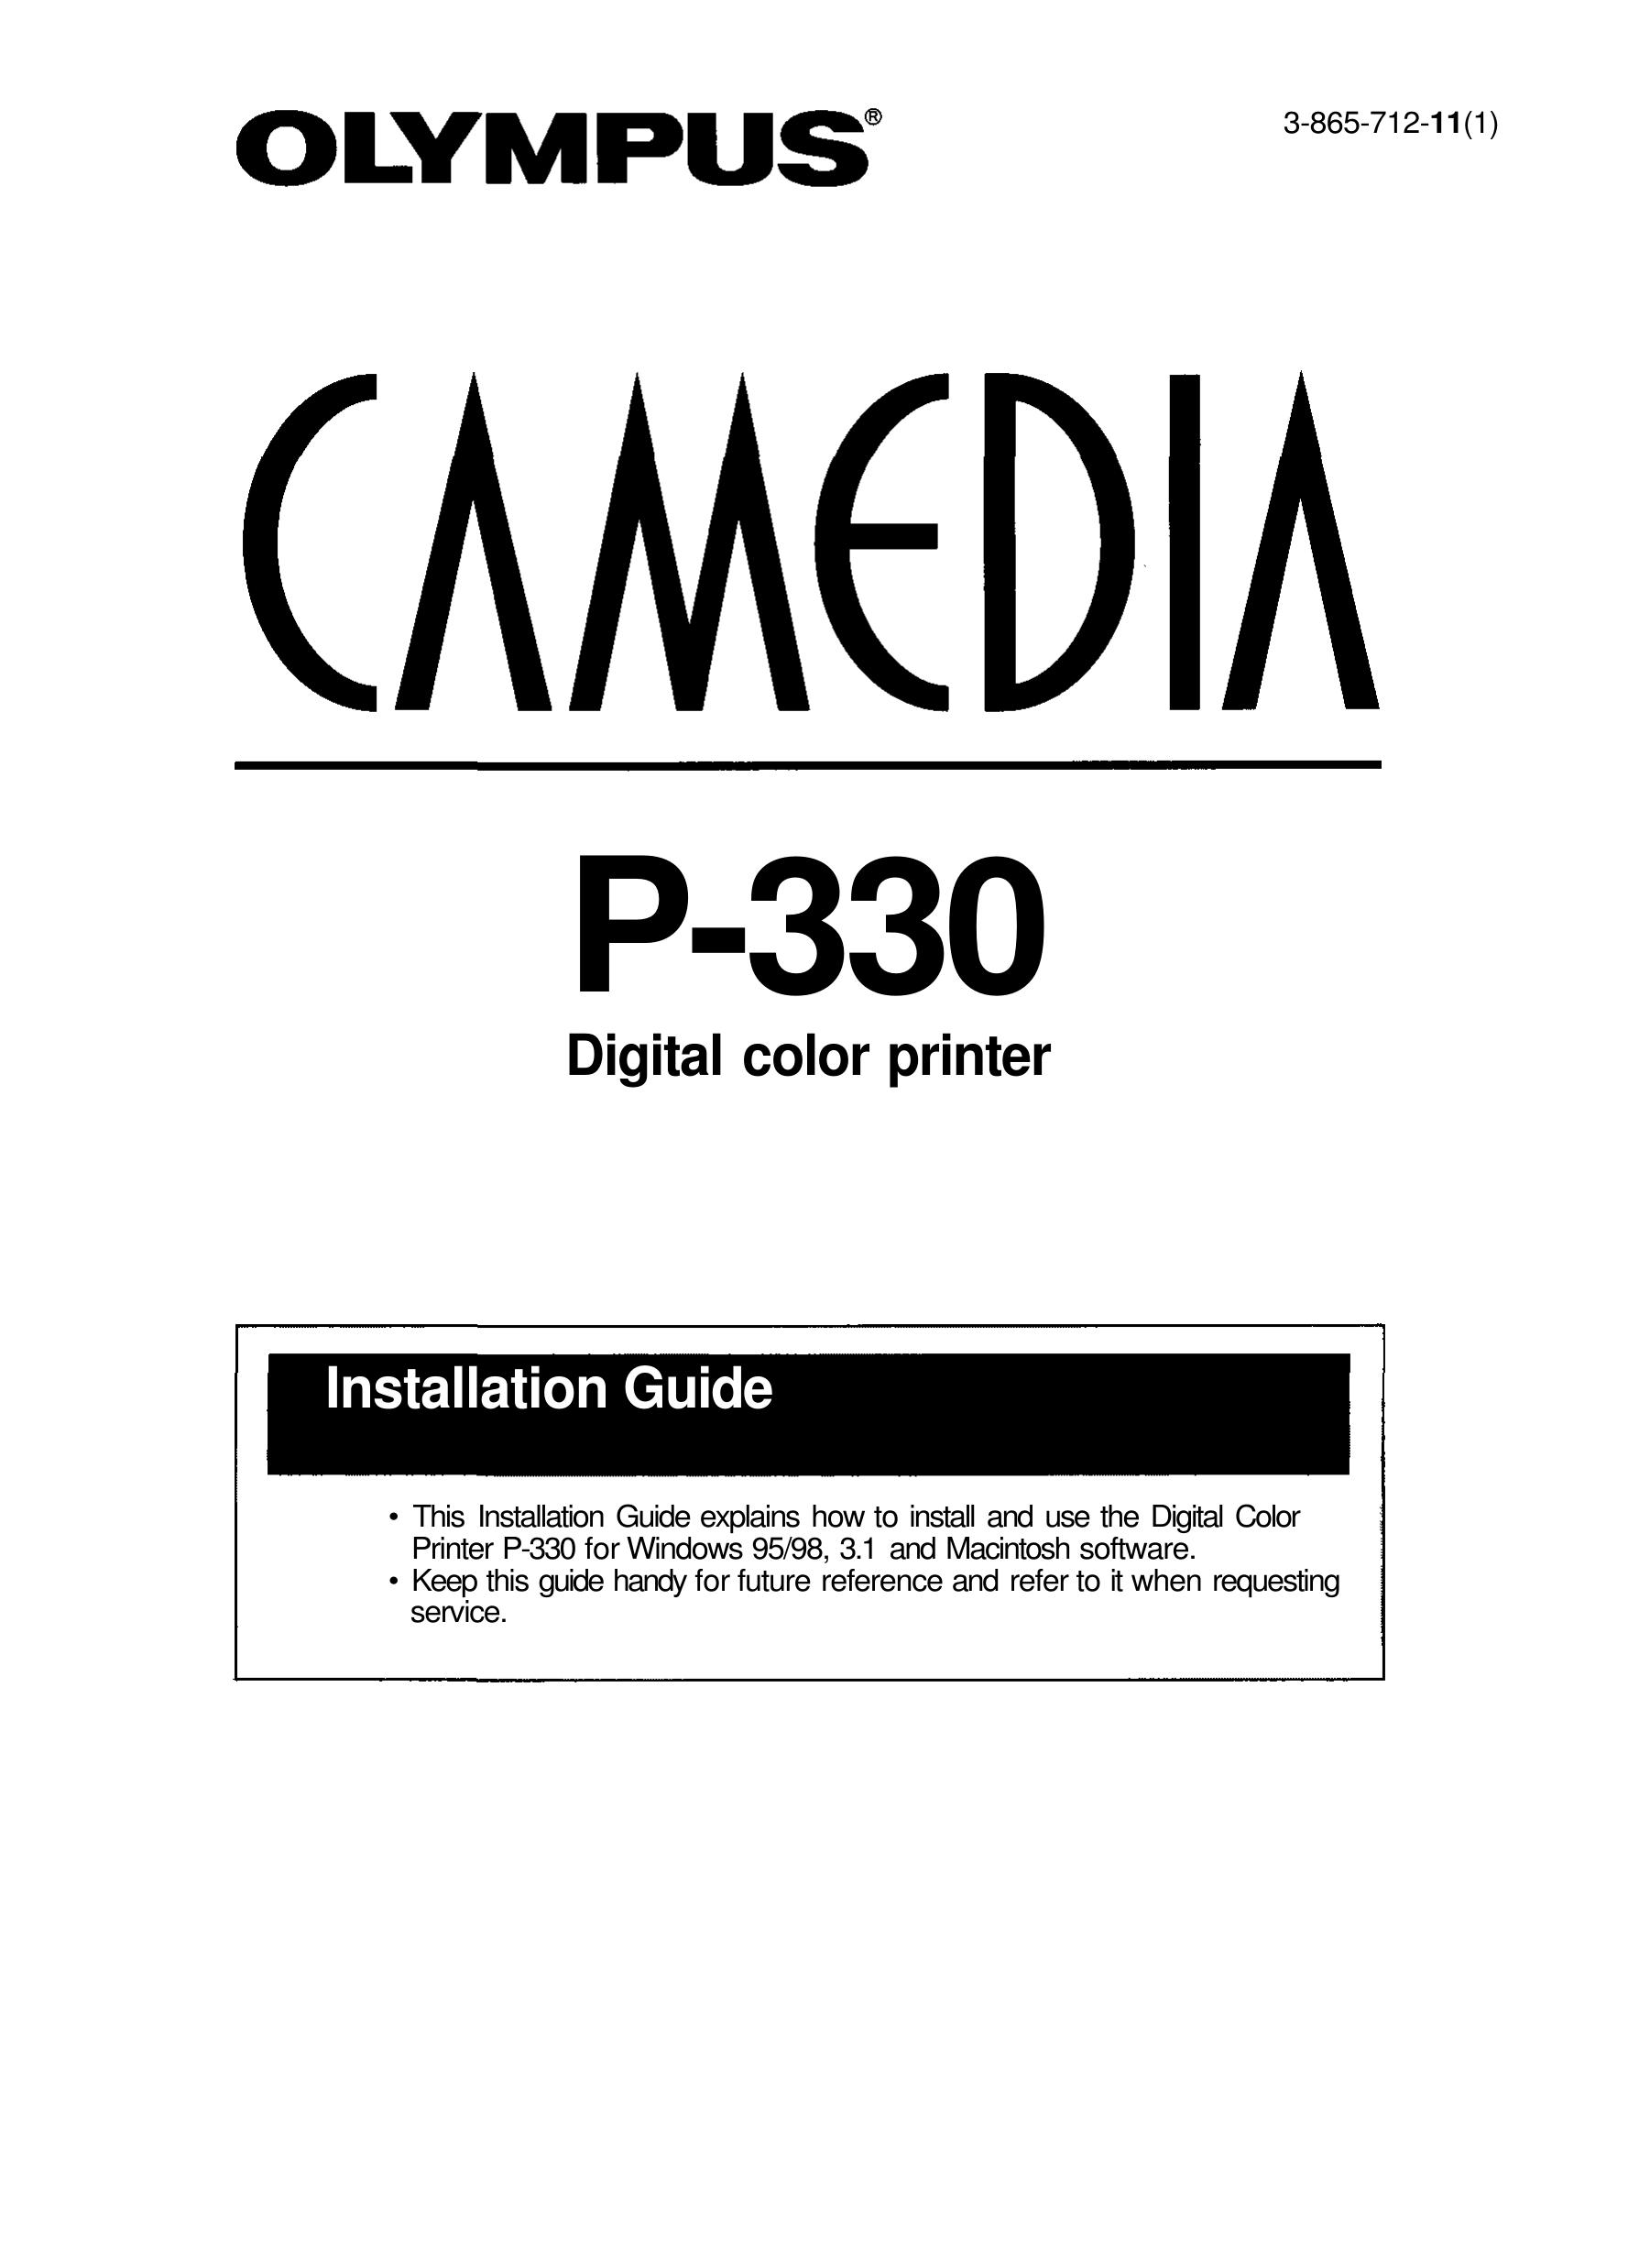 Olympus P-330N Photo Printer User Manual